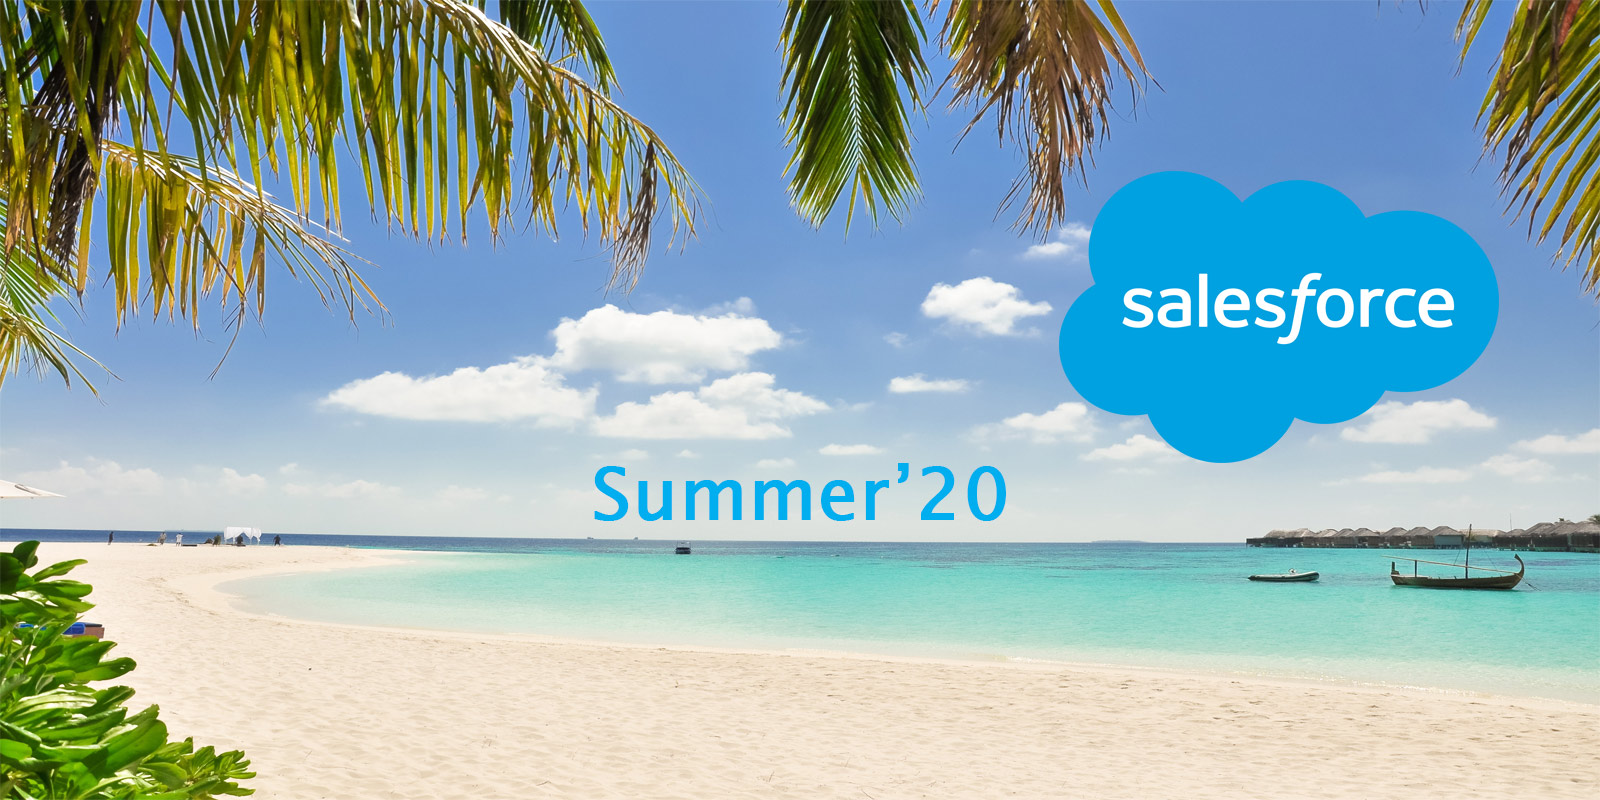 Salesforce Summer 20